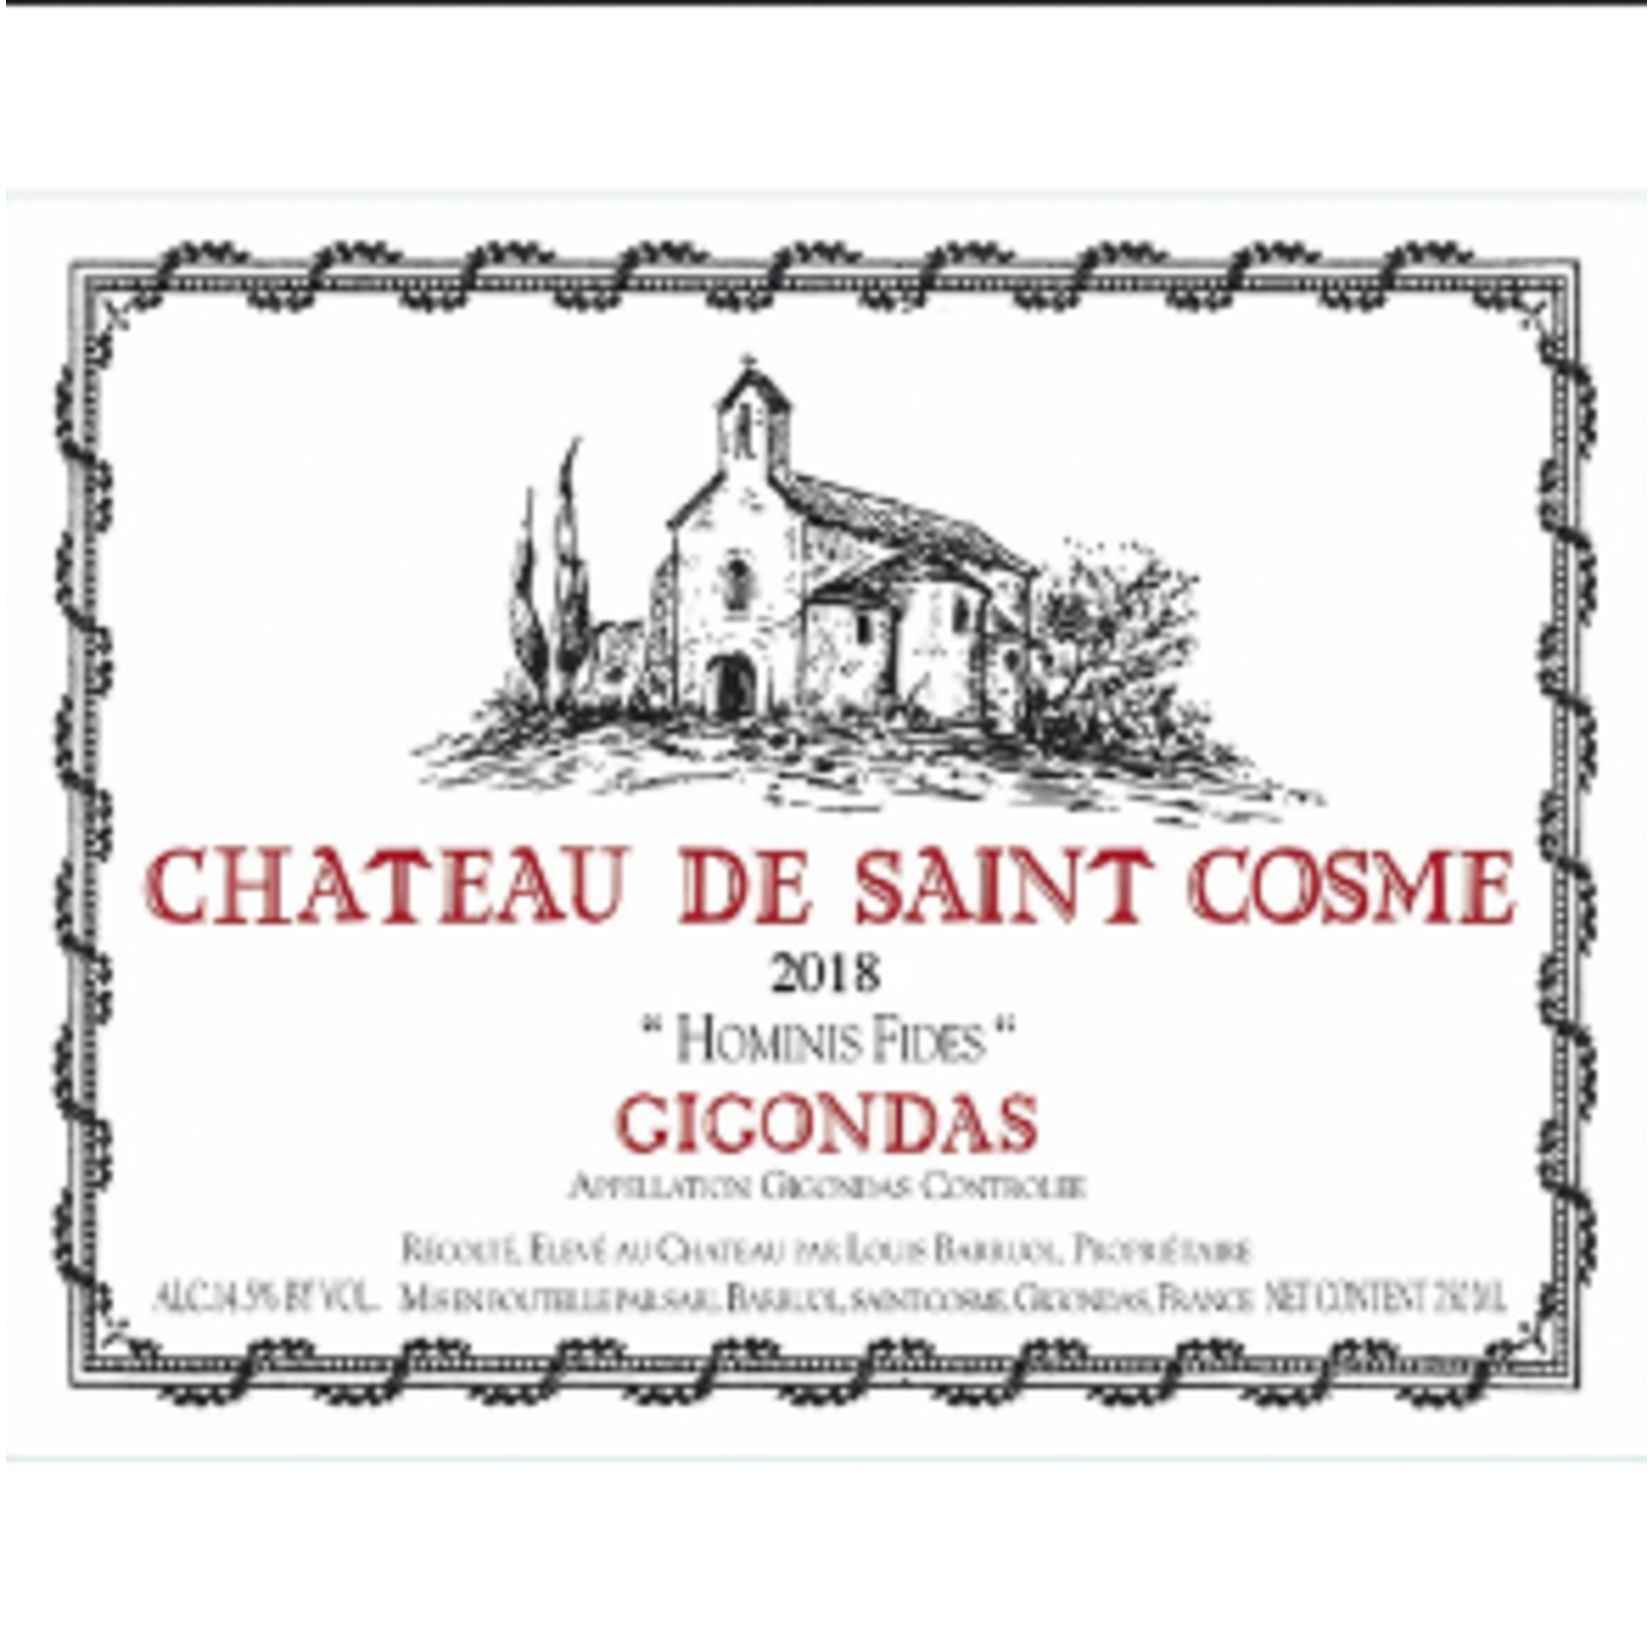 Chateau de Saint Cosme Chateau Saint De Cosme Gigondas 2021  Rhone, France